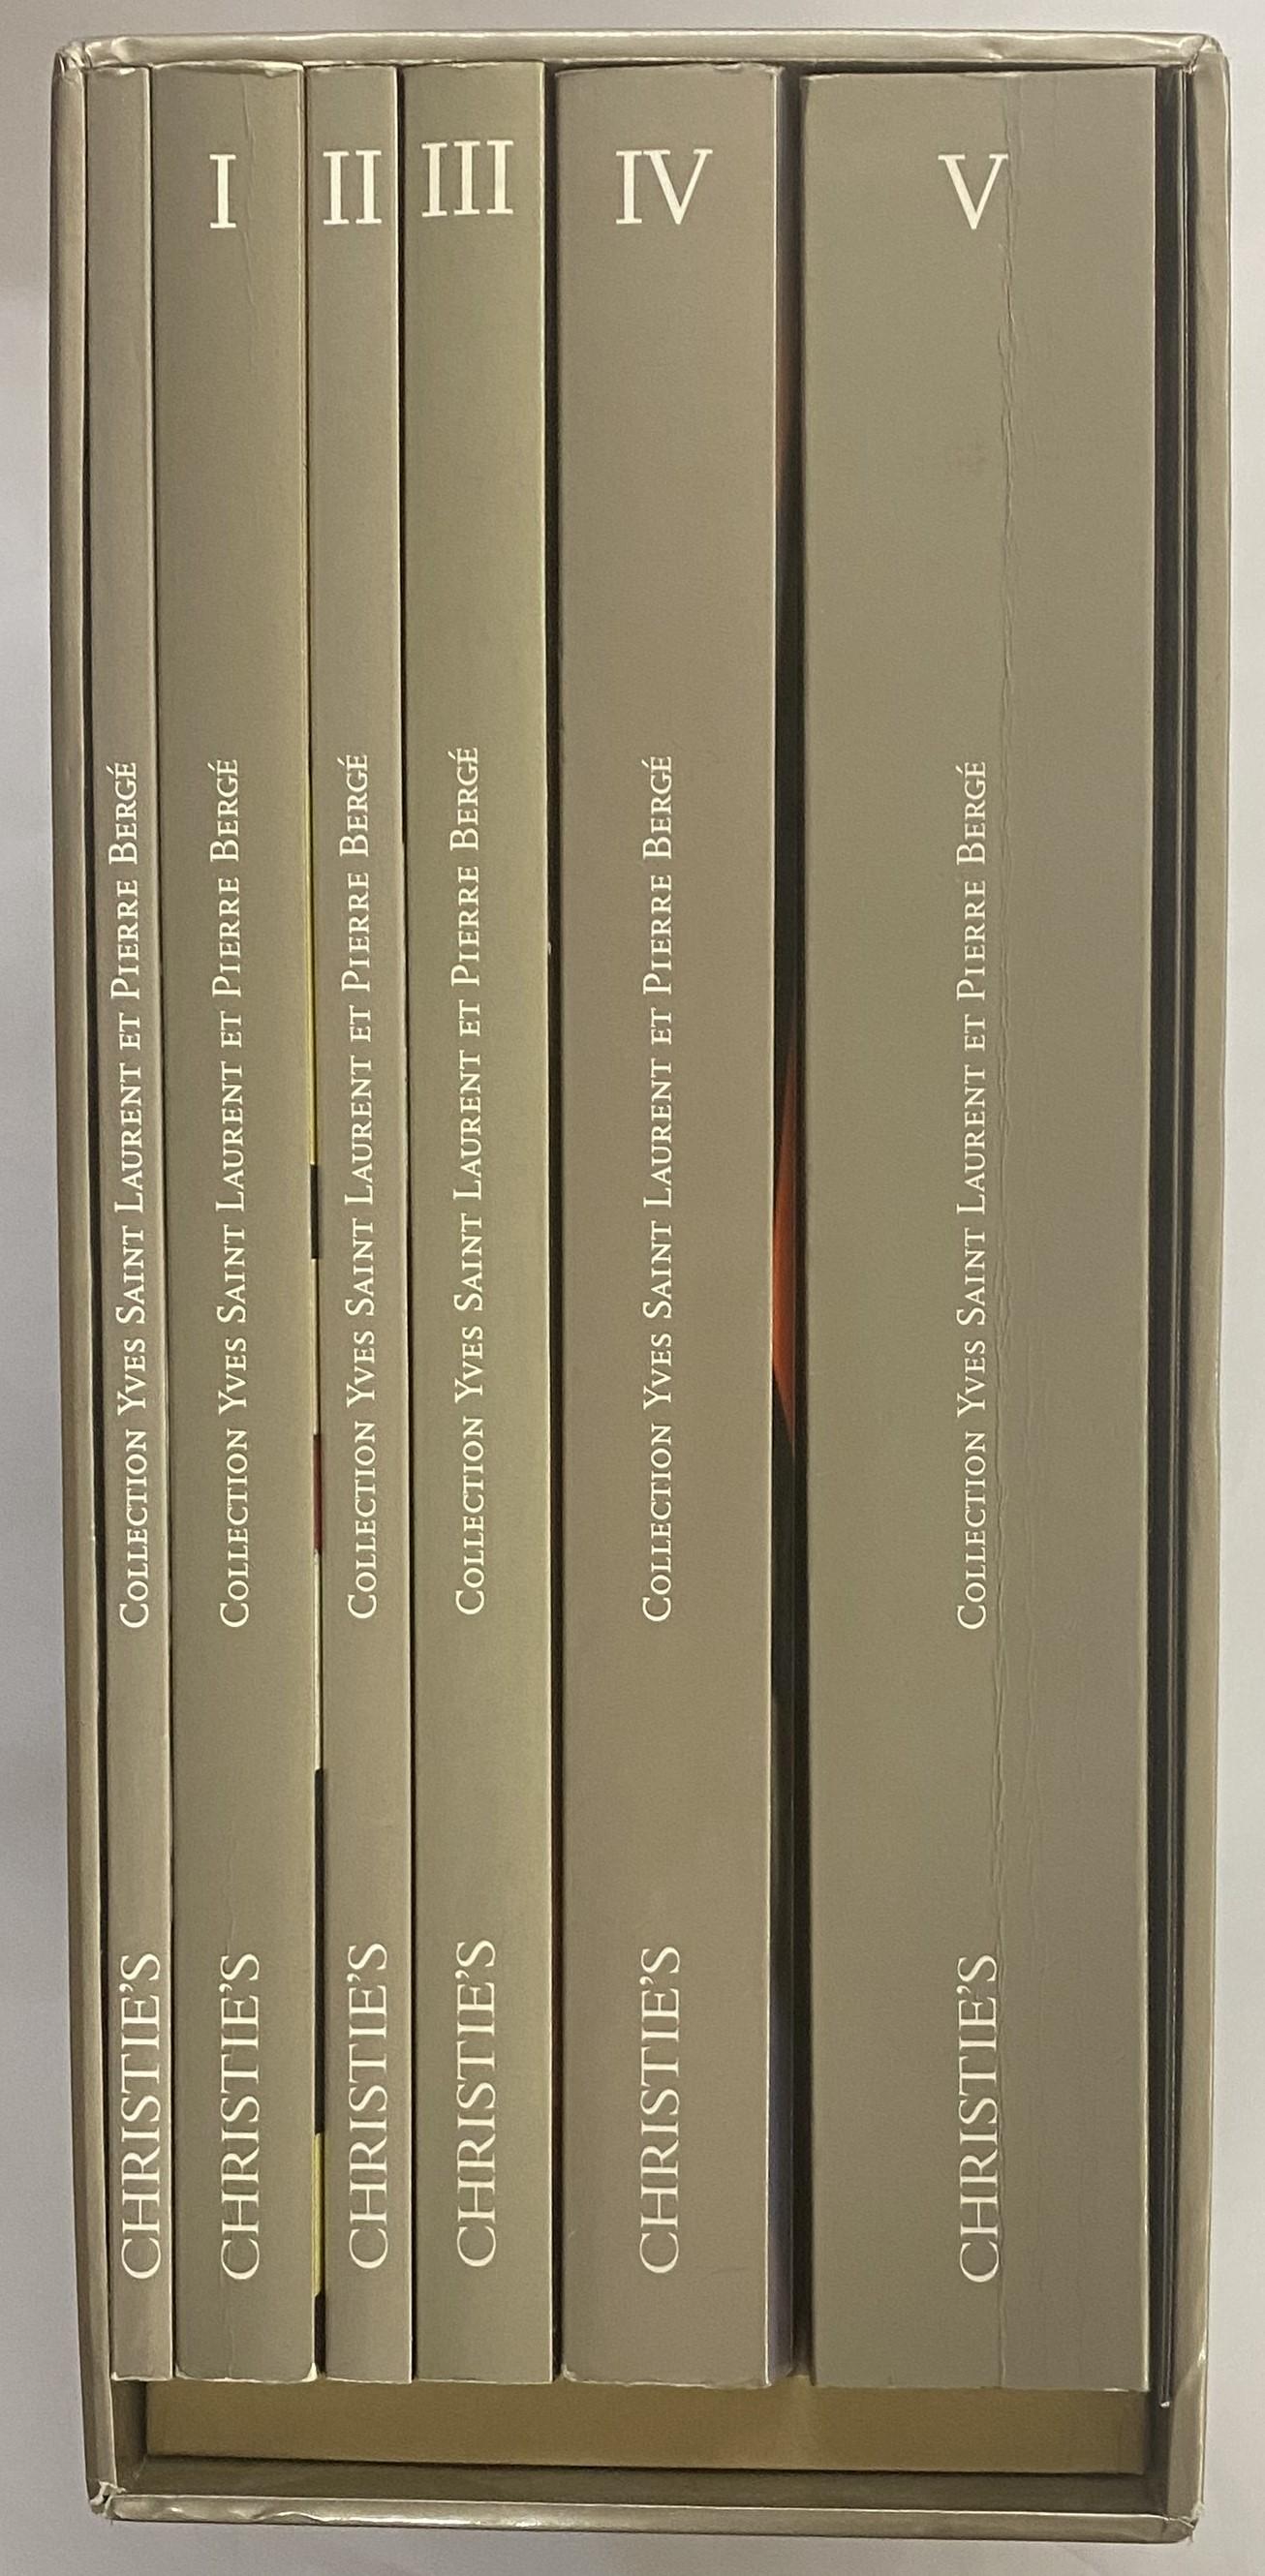 Il s'agit d'un très bon ensemble de catalogues de vente produits par Christie's pour la vente de la magnifique collection réunie par Yves Saint Laurent et Pierre Berge, du 23 au 25 février 2009, qui comprenait de nombreuses pièces étonnantes et la